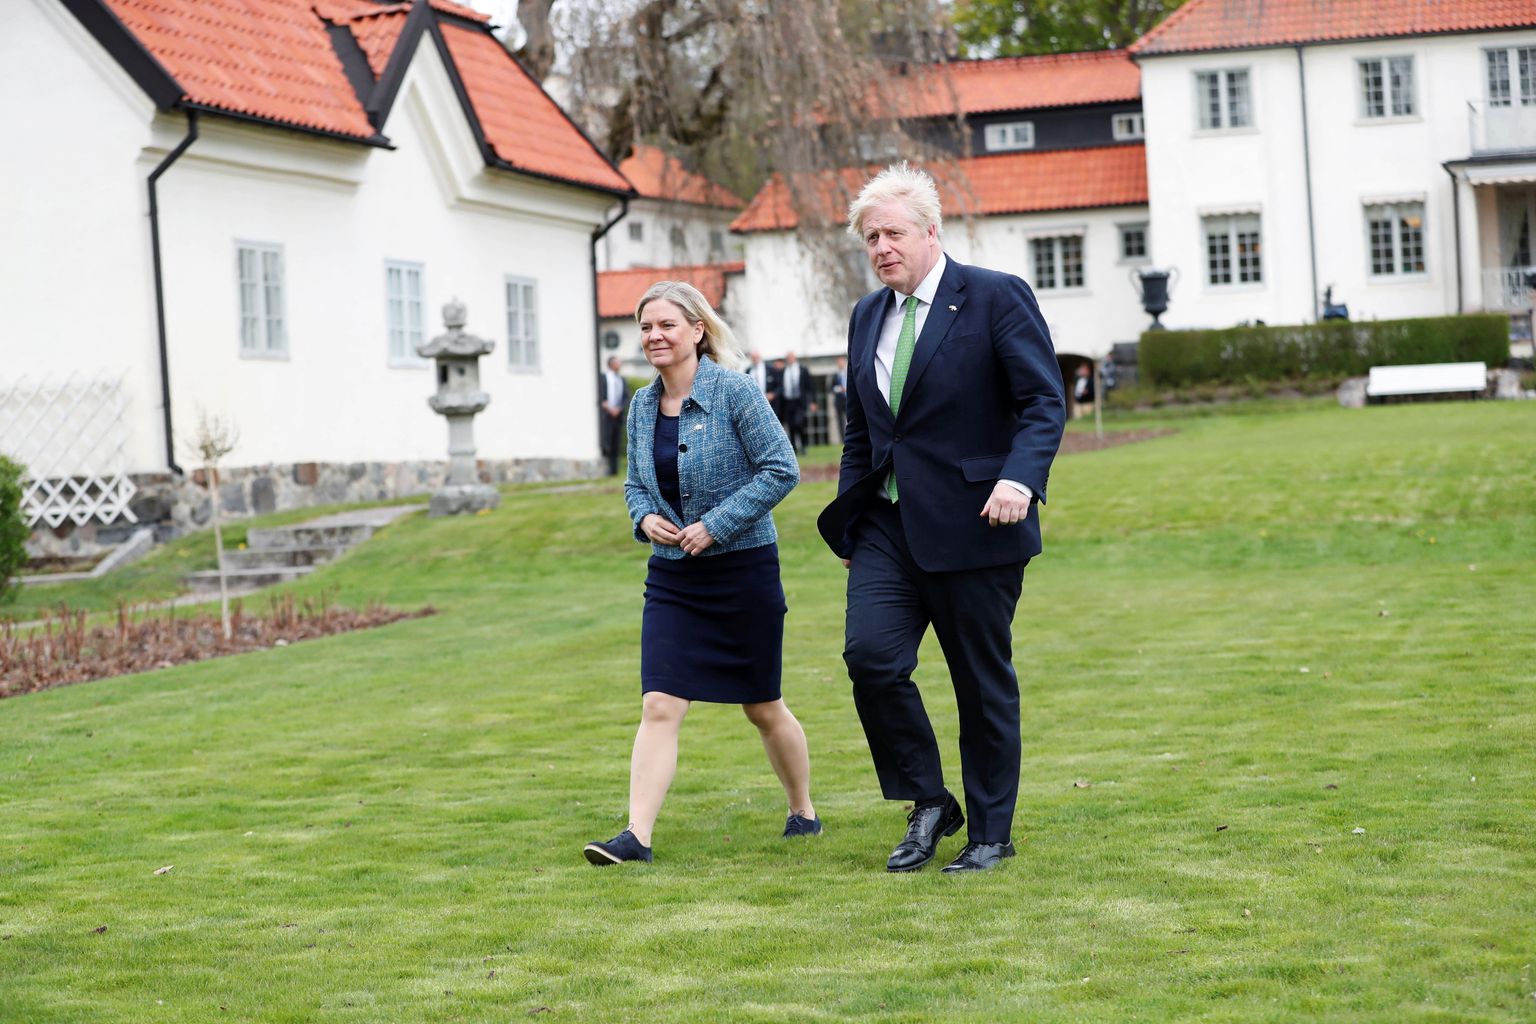 Briti peaminister Boris Johnson ja Rootsi peaminister Magdalena Andersson kohtusid 11. mail 2022 Rootsis Harpsundis, kus asub Rootsi peaministri suvekodu